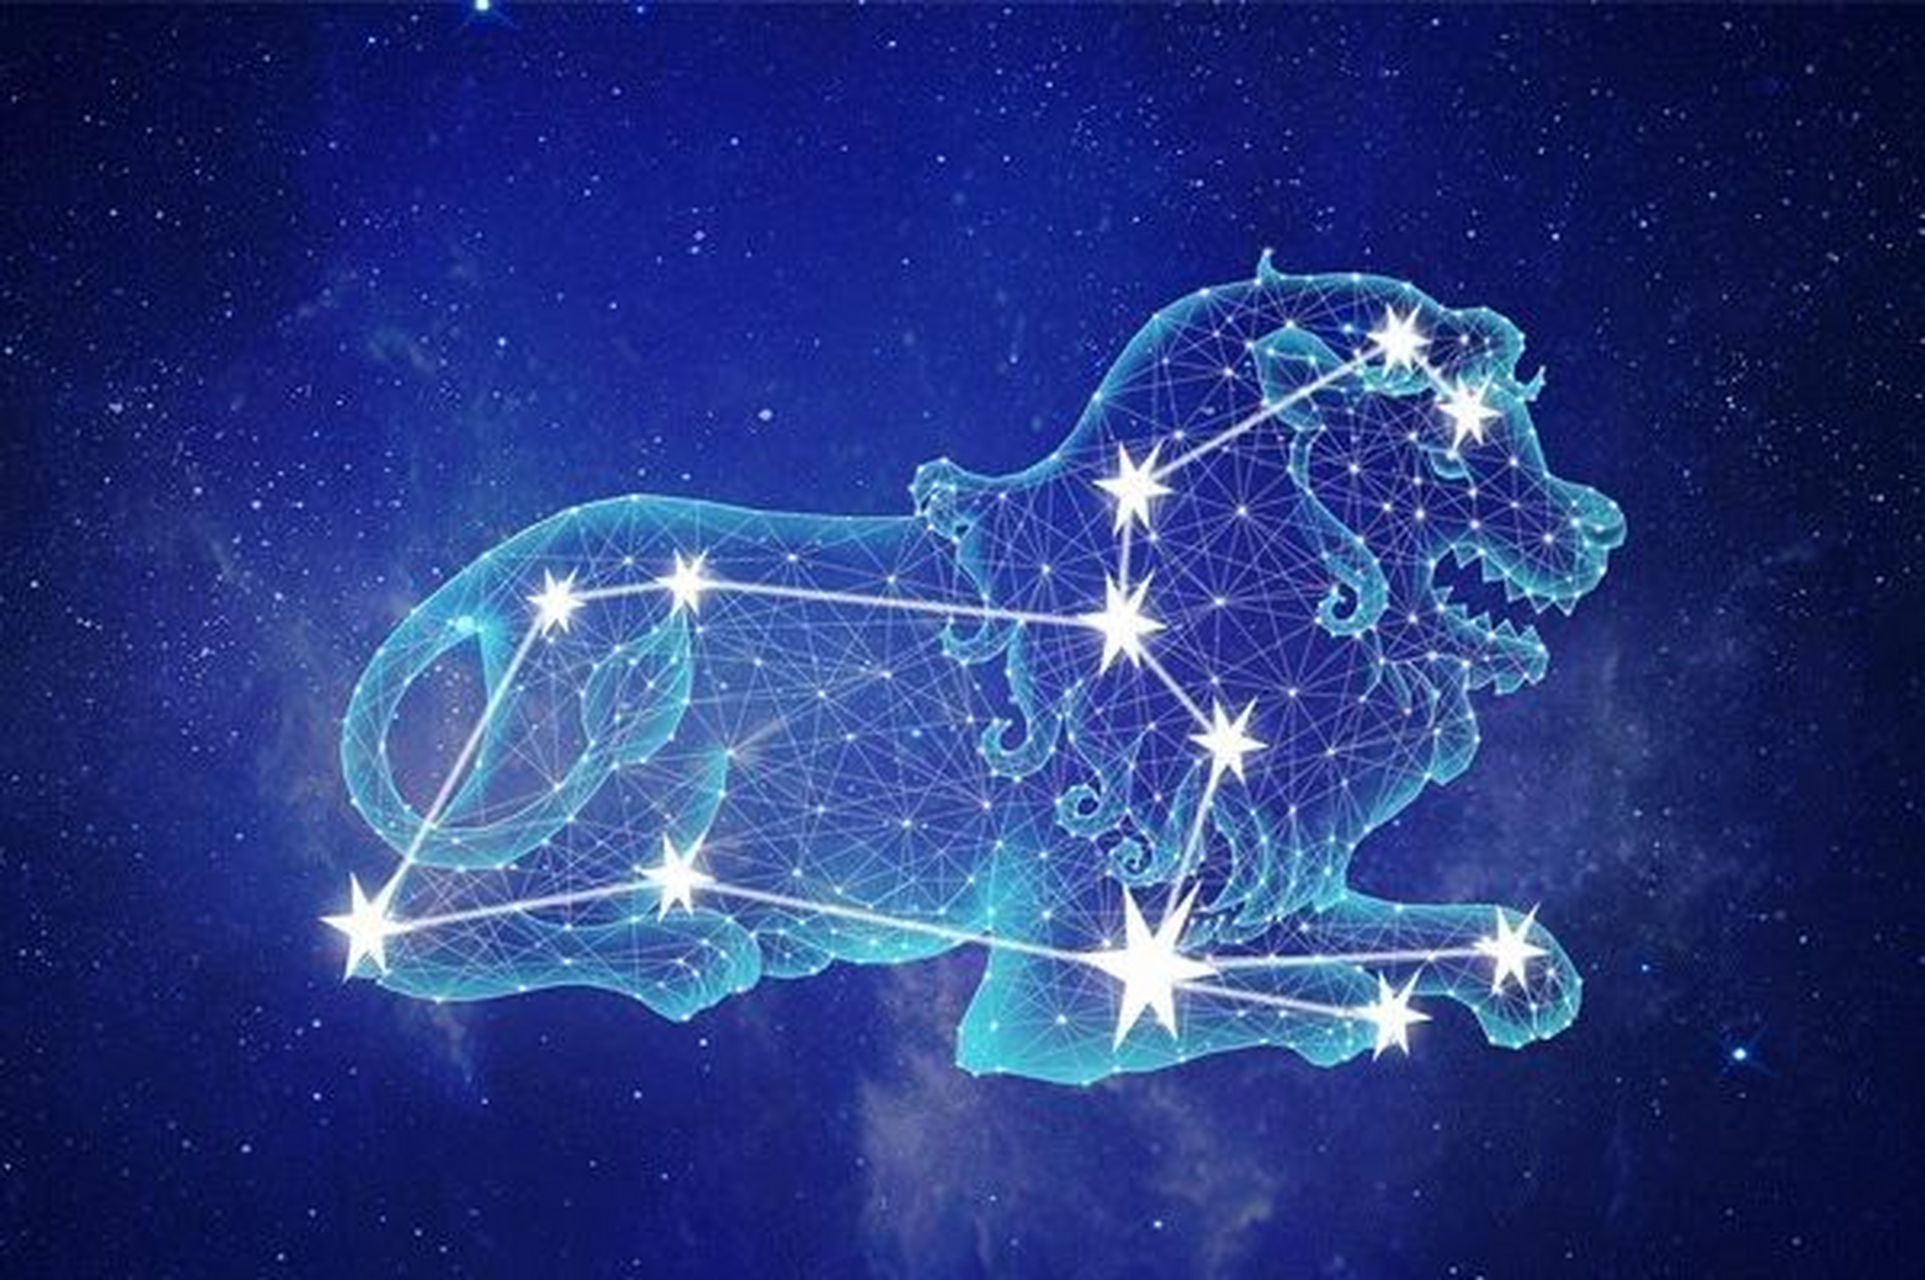 星座占星学——狮子座 中文名称:狮子座 英文名称:leo 出生日期:7月23